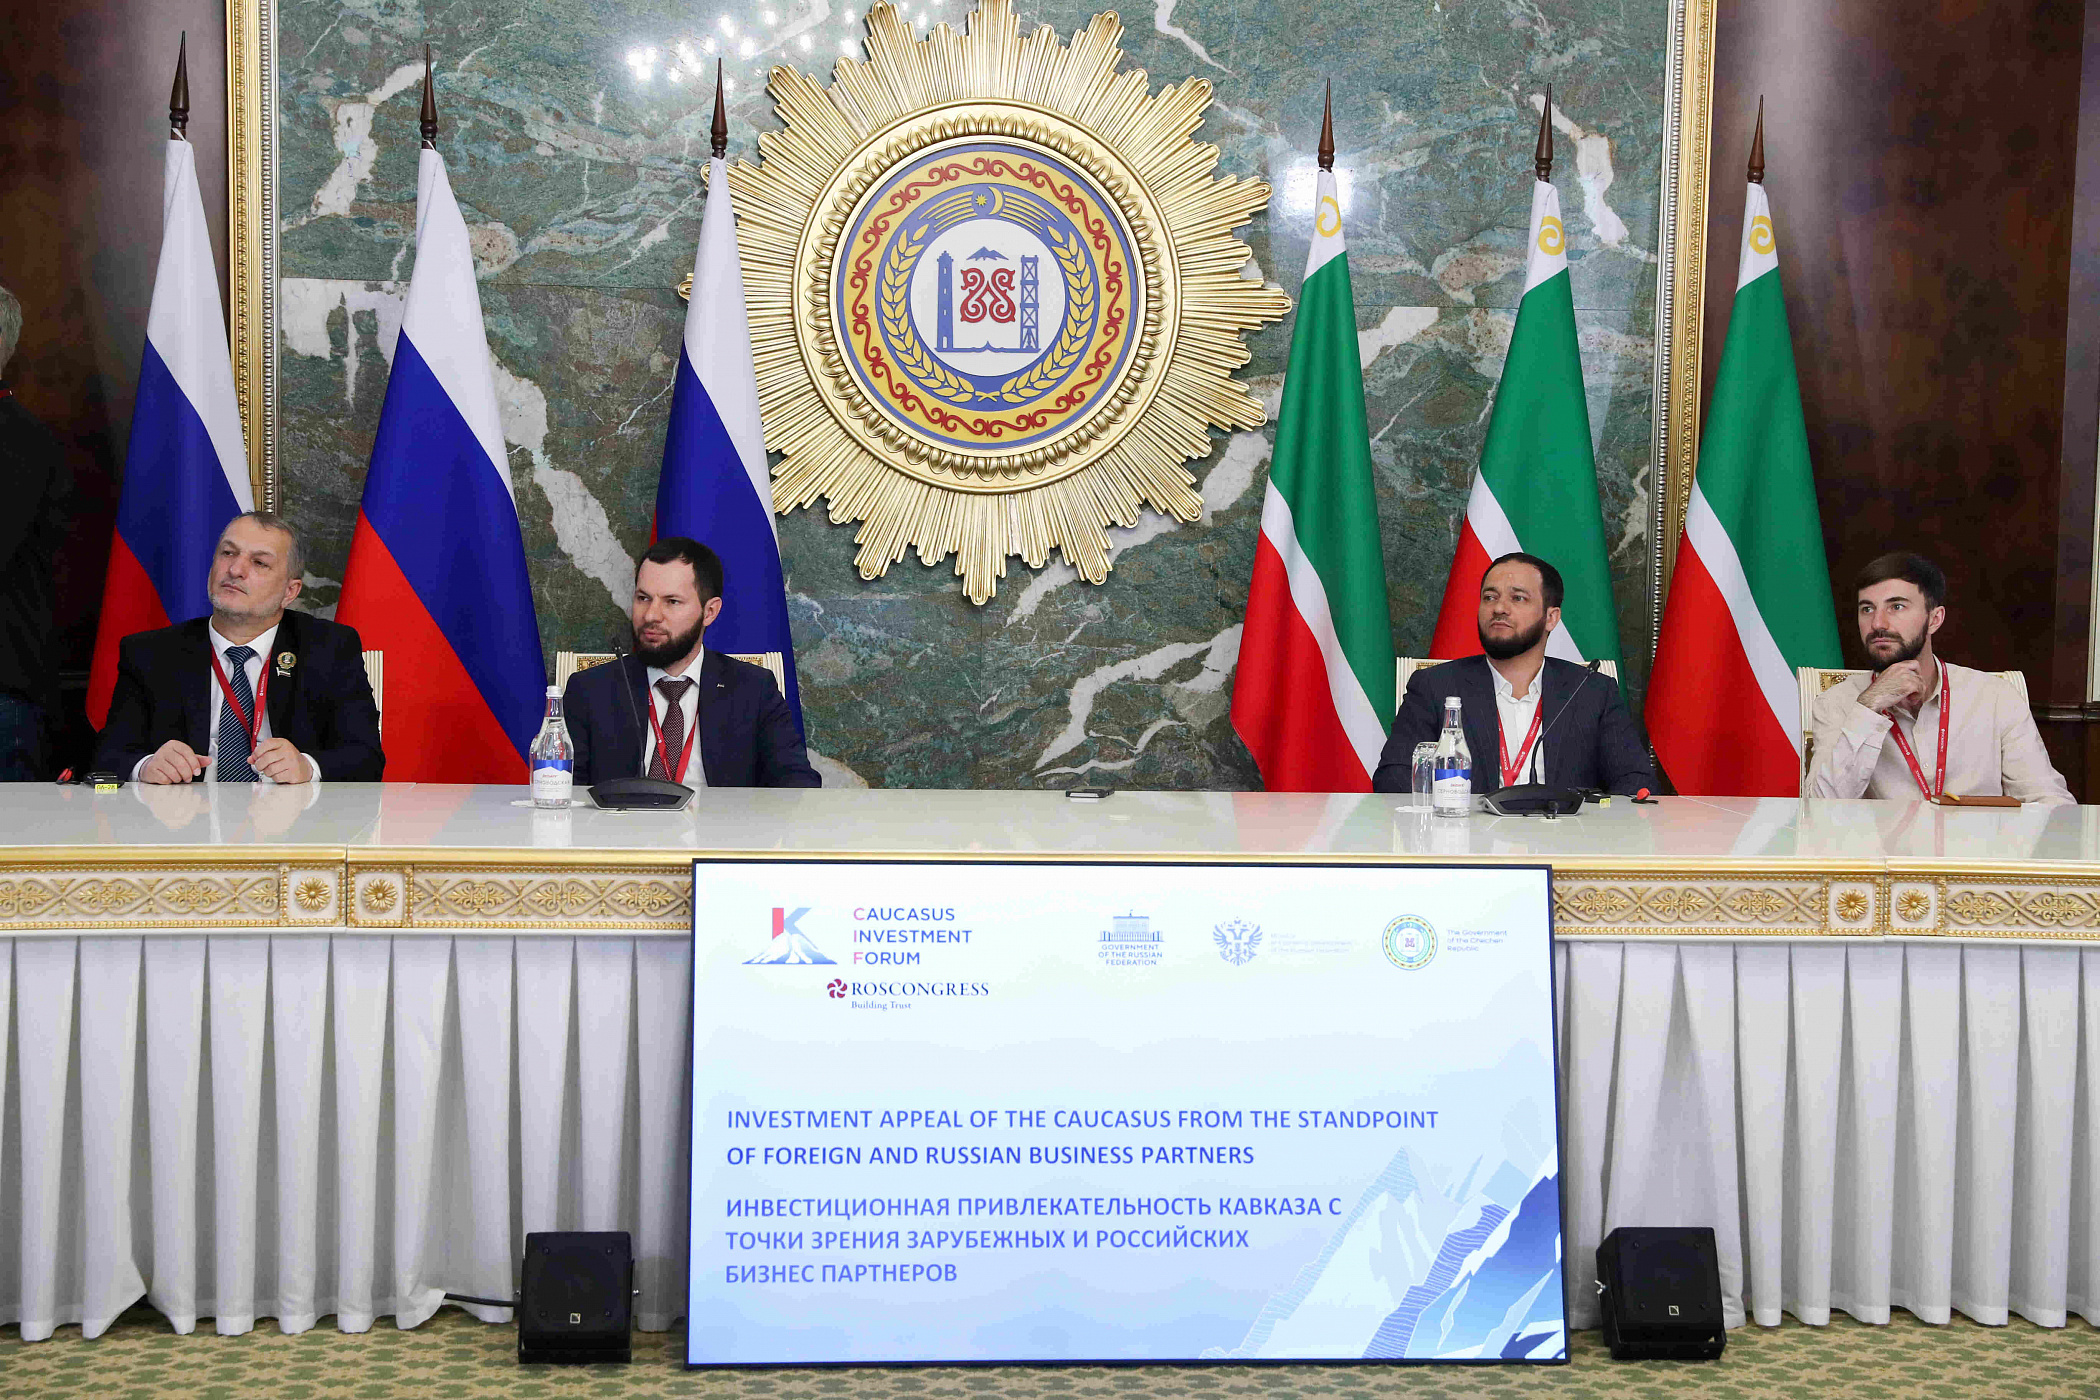 Сессия «Инвестиционная привлекательность Кавказа с точки зрения зарубежных и российских бизнес-партнеров» на Кавказском инвестиционном форуме 